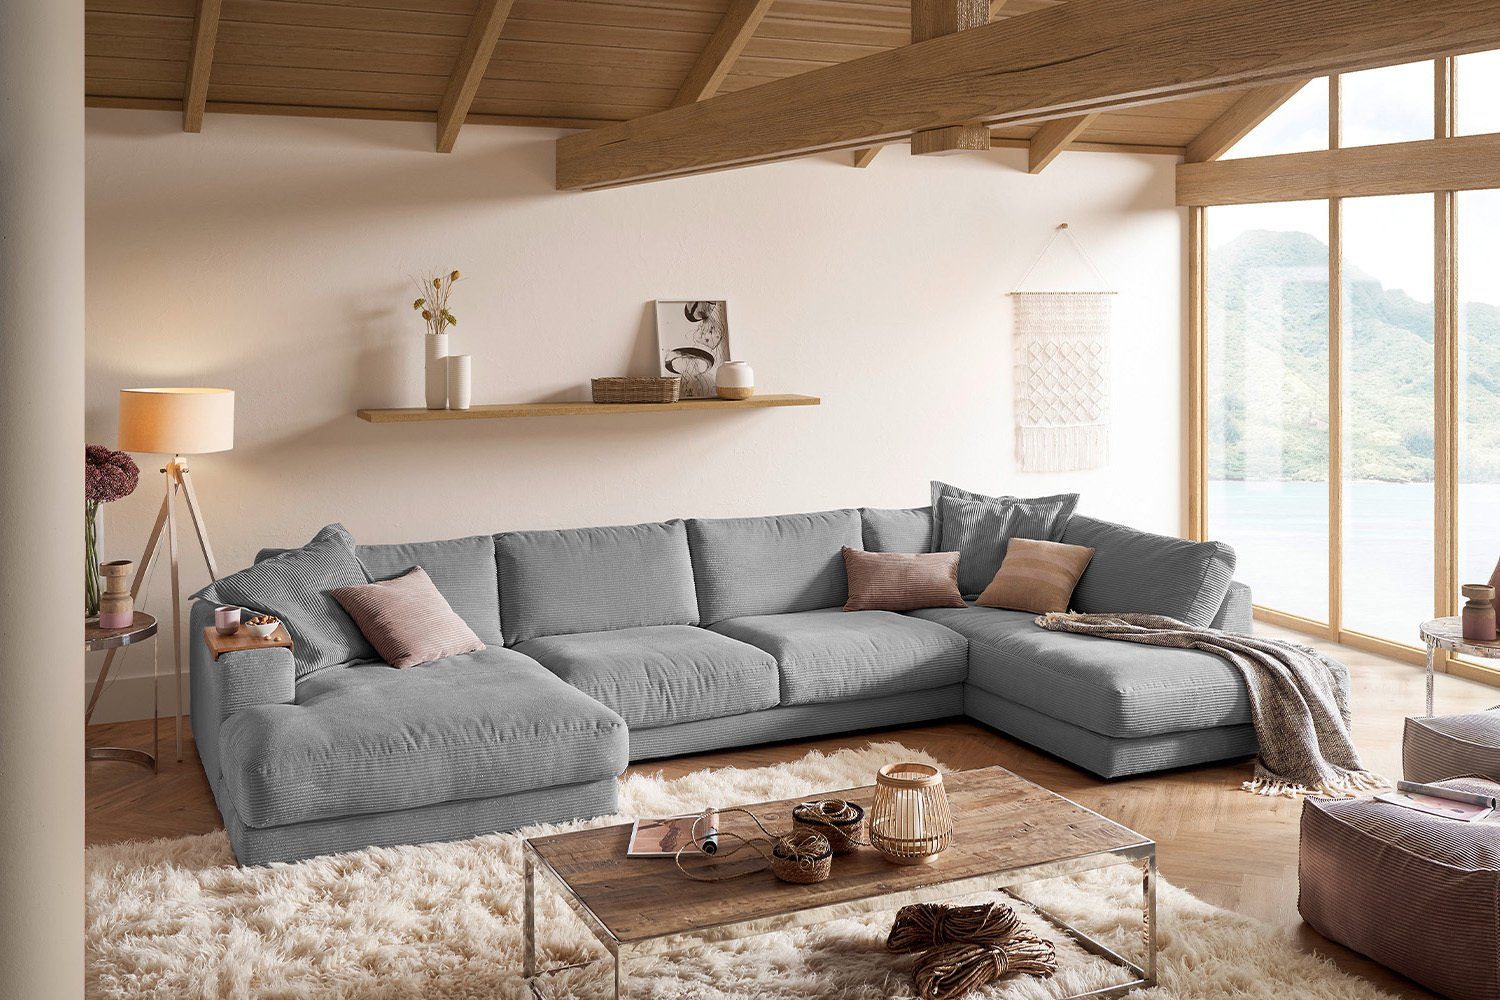 KAWOLA Wohnlandschaft MADELINE, Sofa U-Form Cord, Longchair rechts od. links, versch. Farben grau